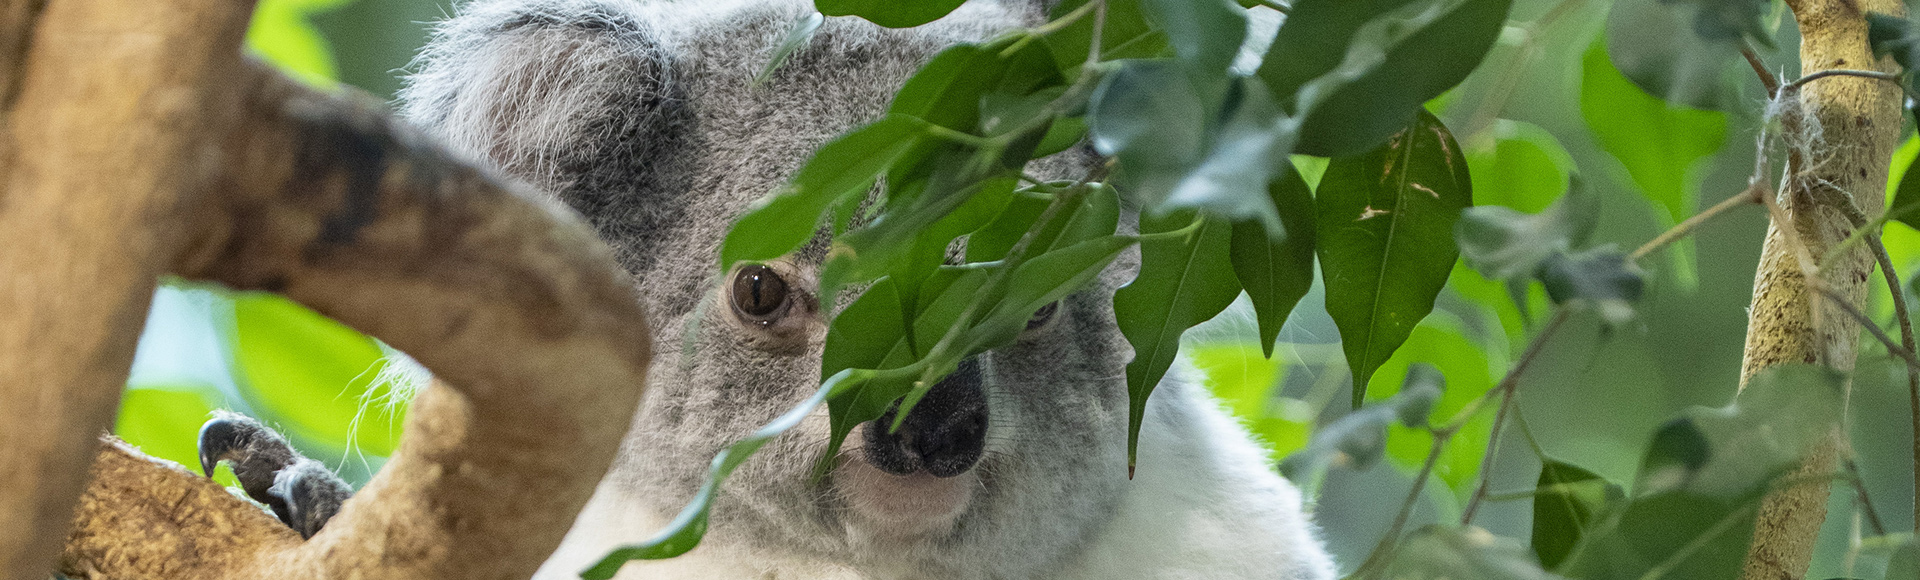 Selon les experts, les koalas sont à présent « fonctionnellement éteints »,  et voici ce que cela signifie